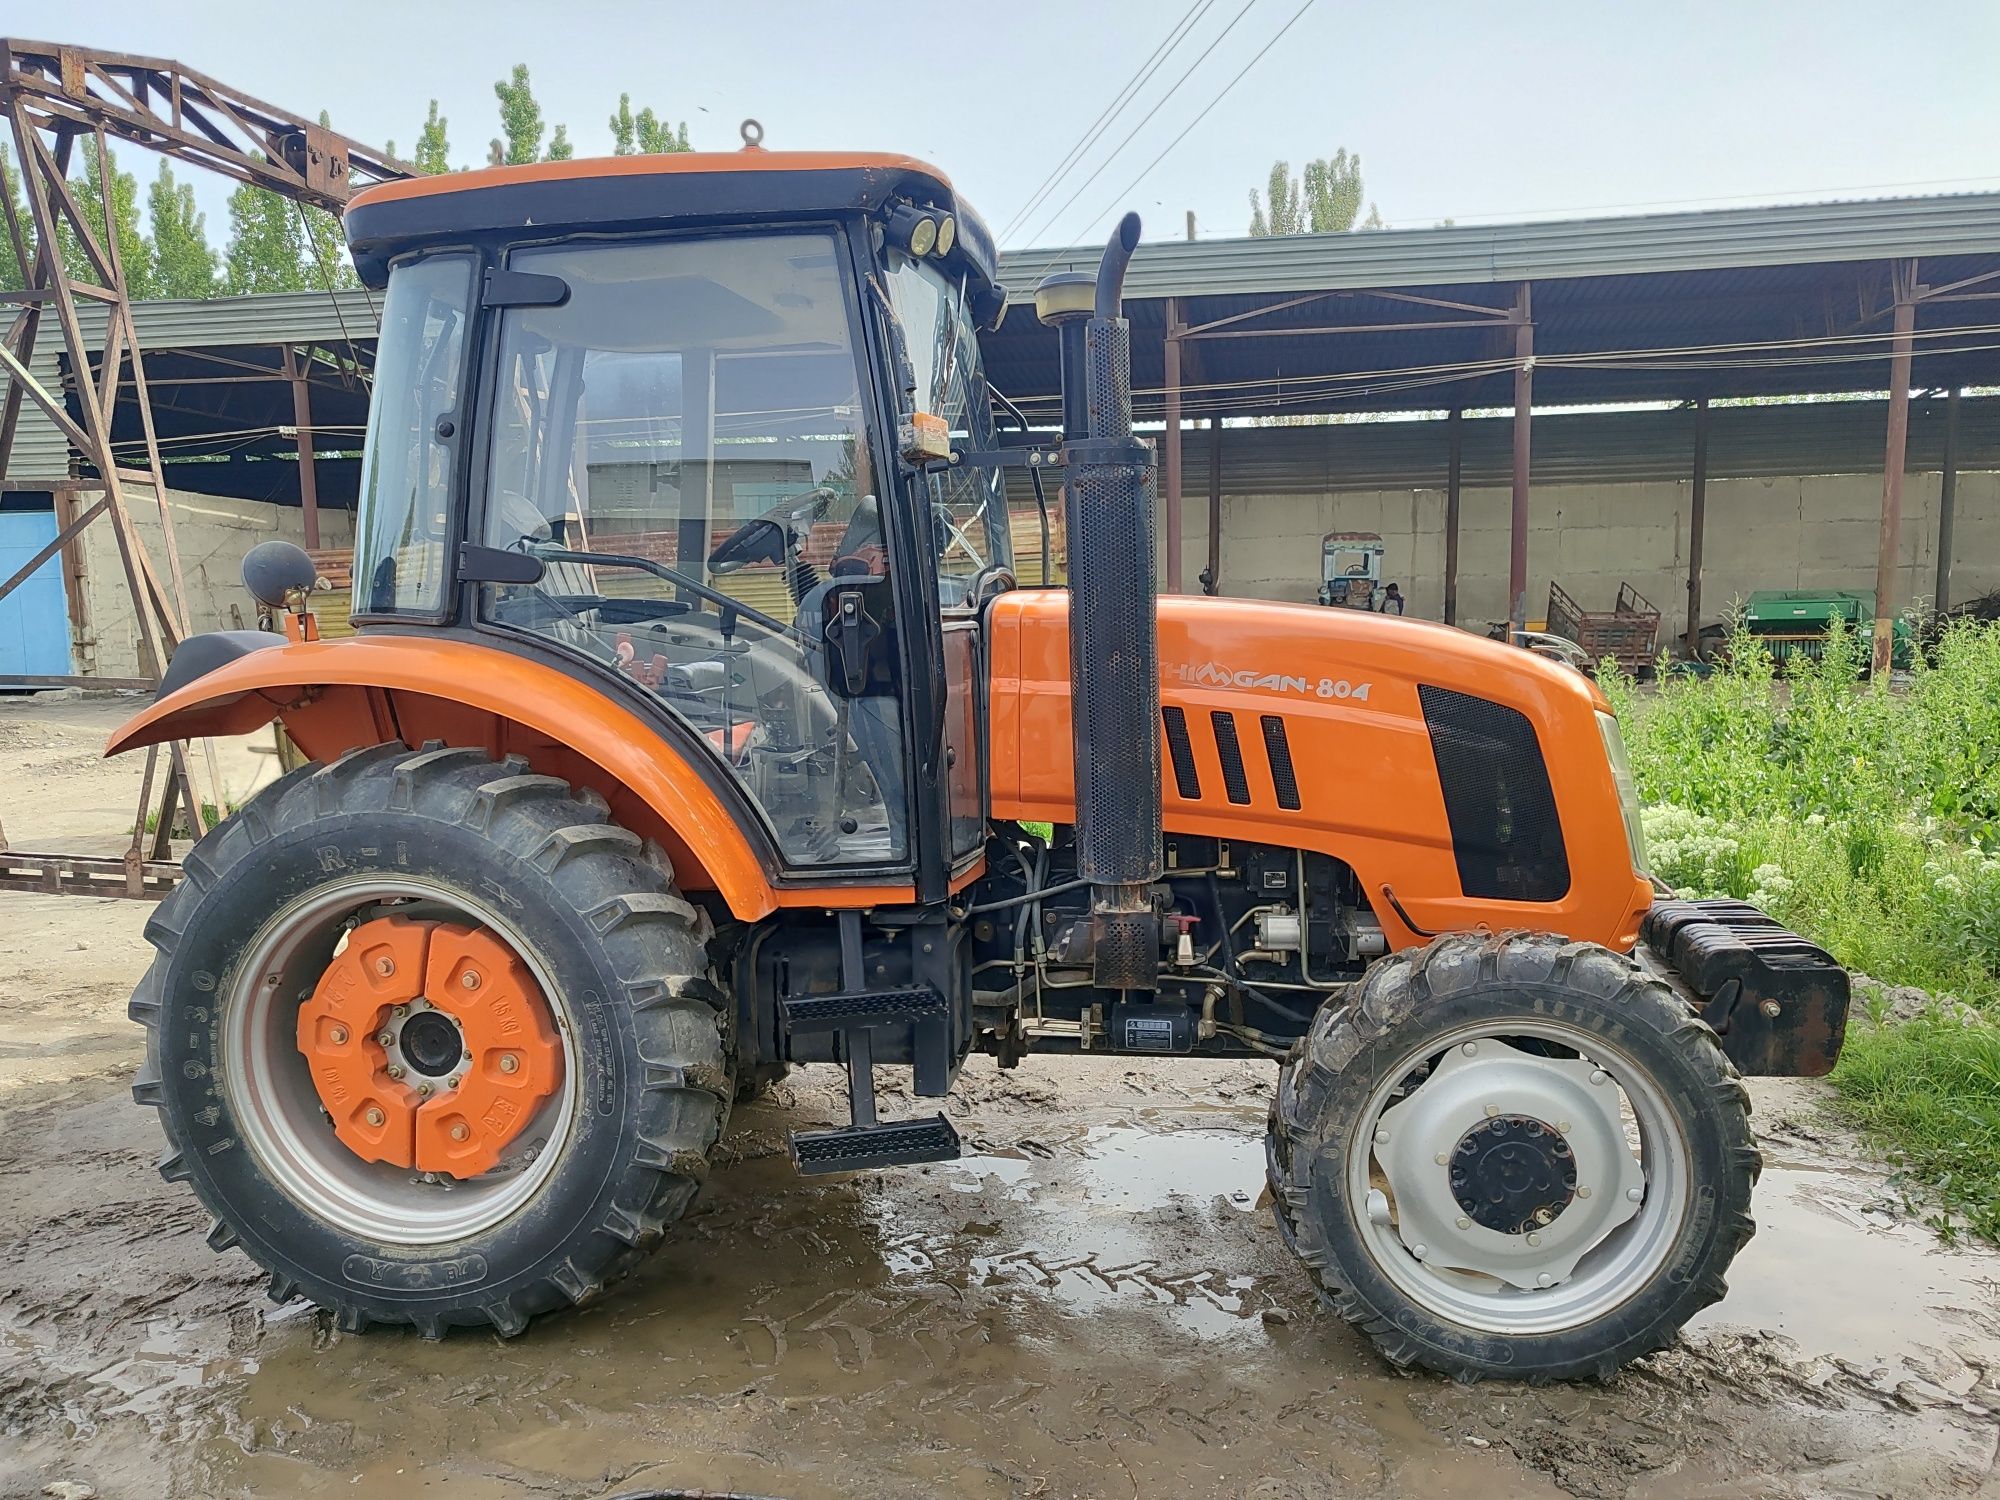 Chimgan 804 traktor